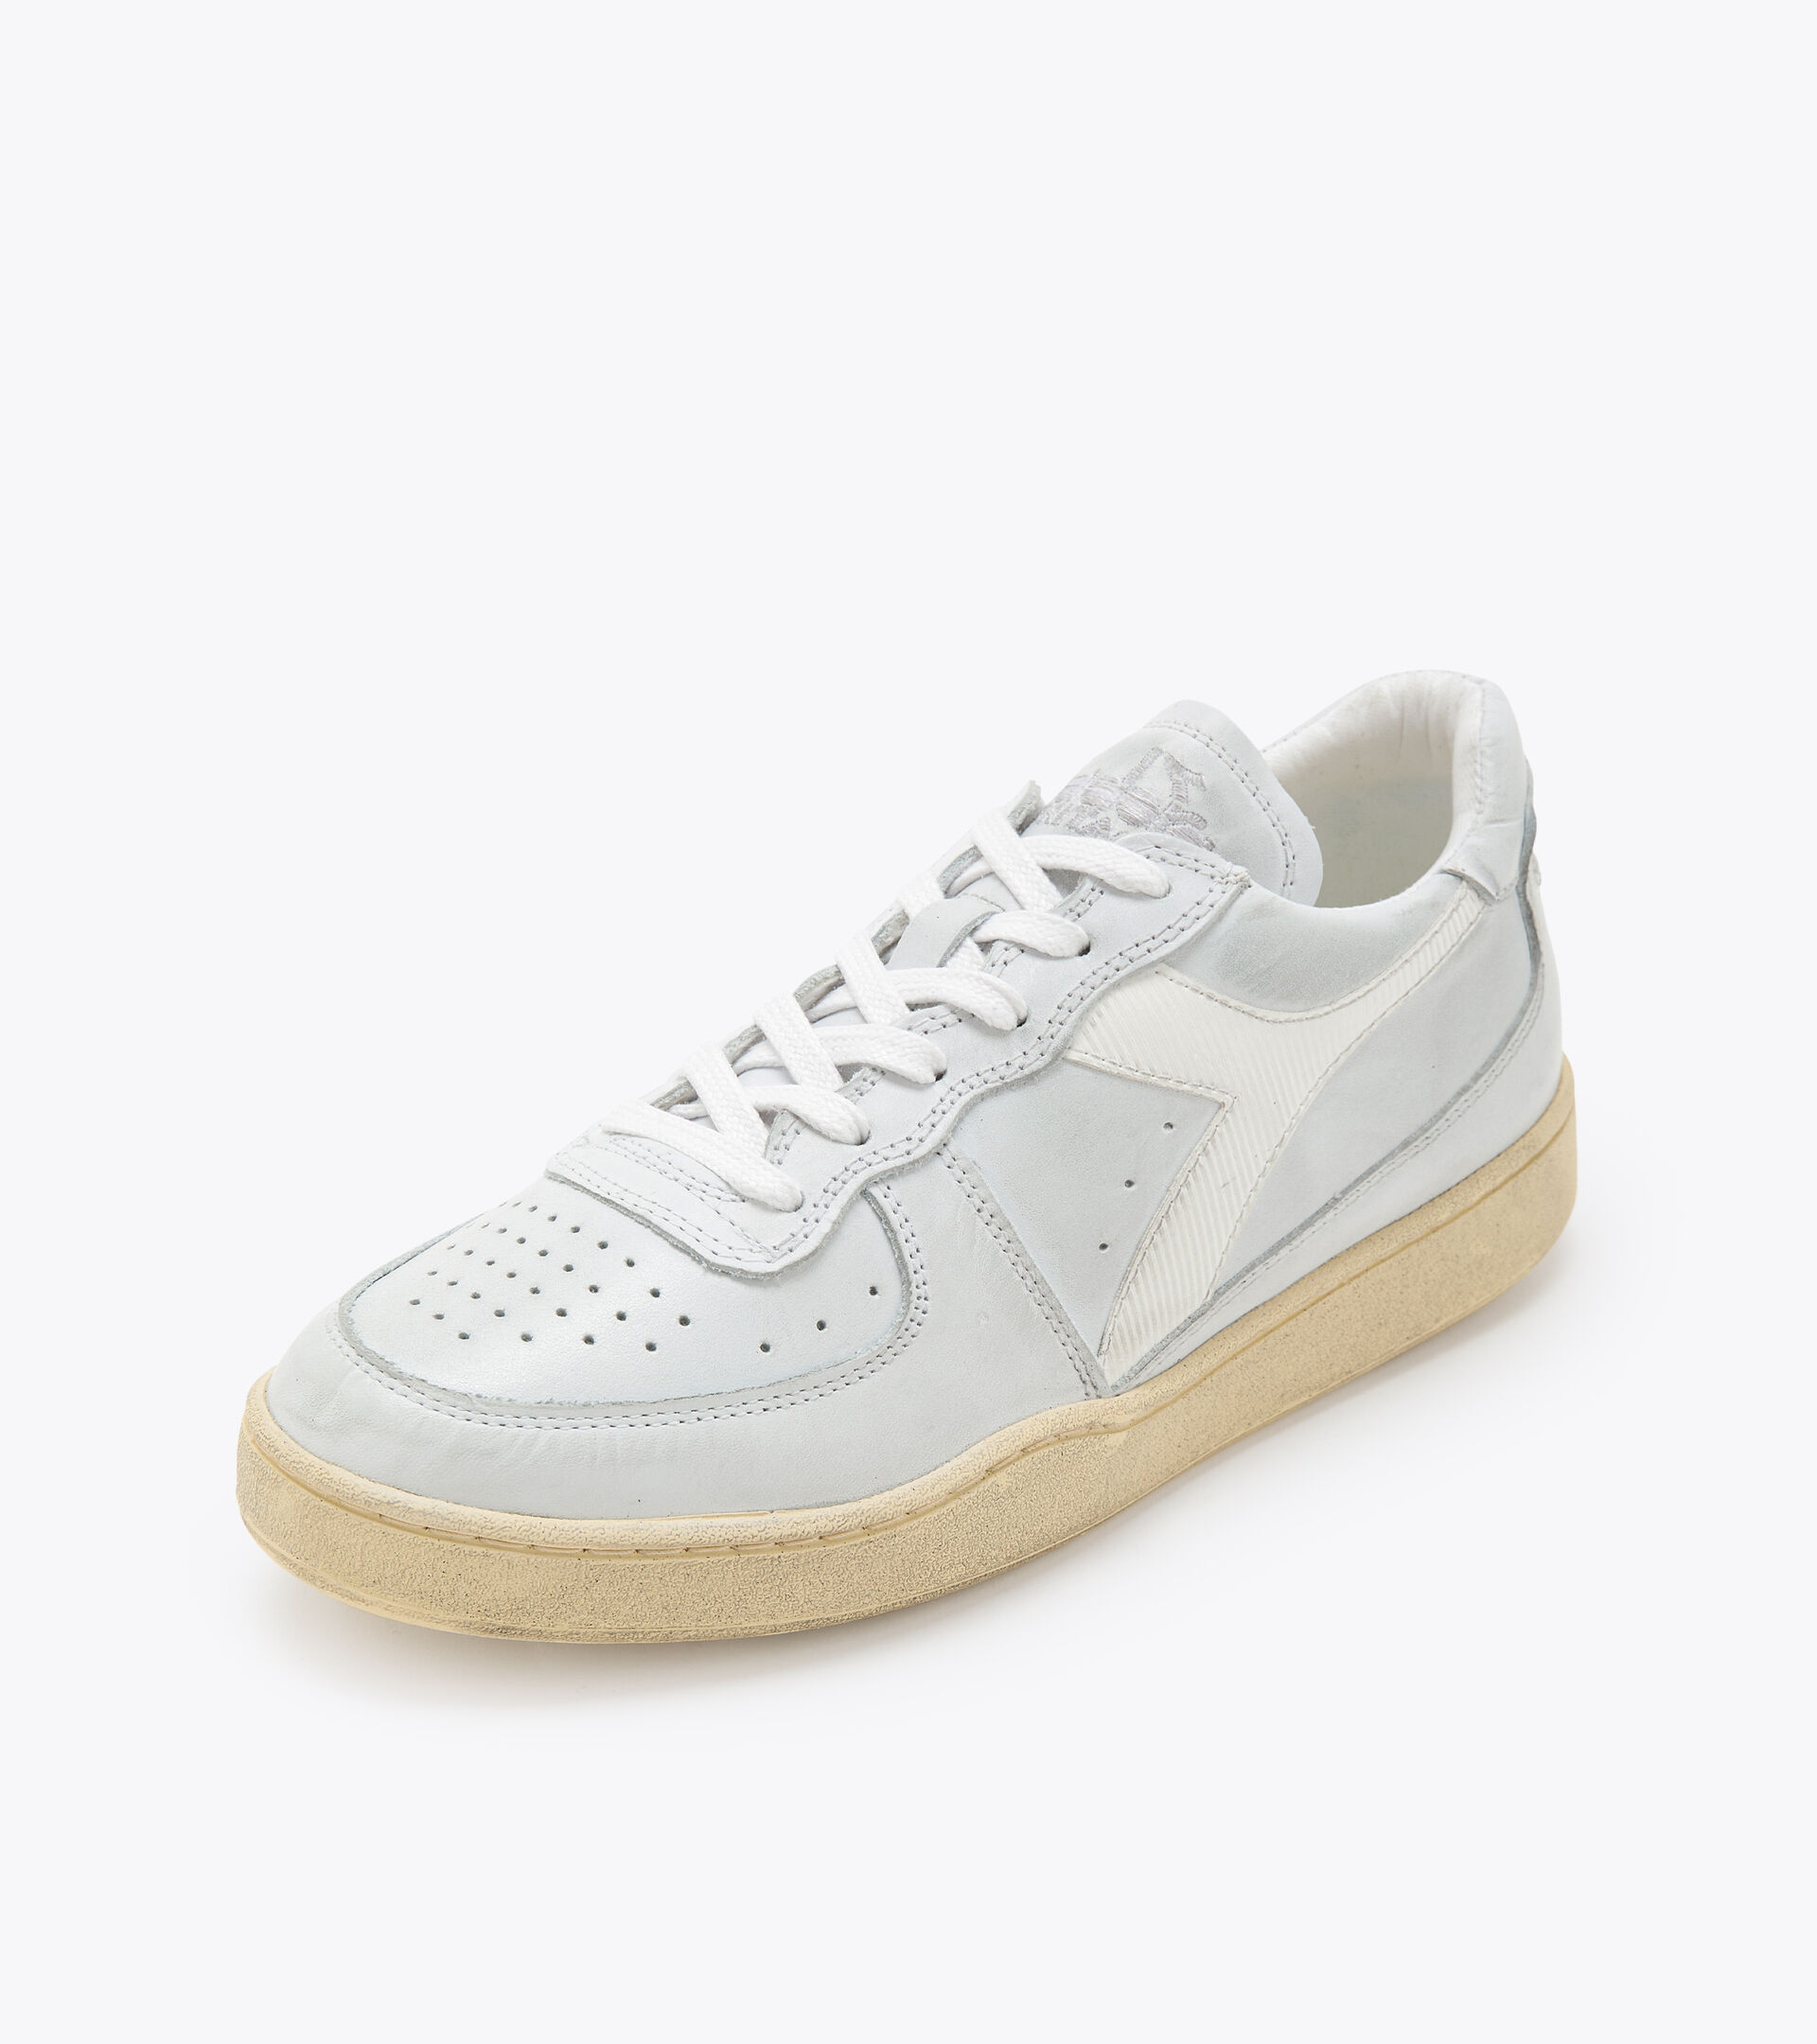 Heritage shoes - Gender neutral MI BASKET LOW USED WHITE /WHITE - Diadora